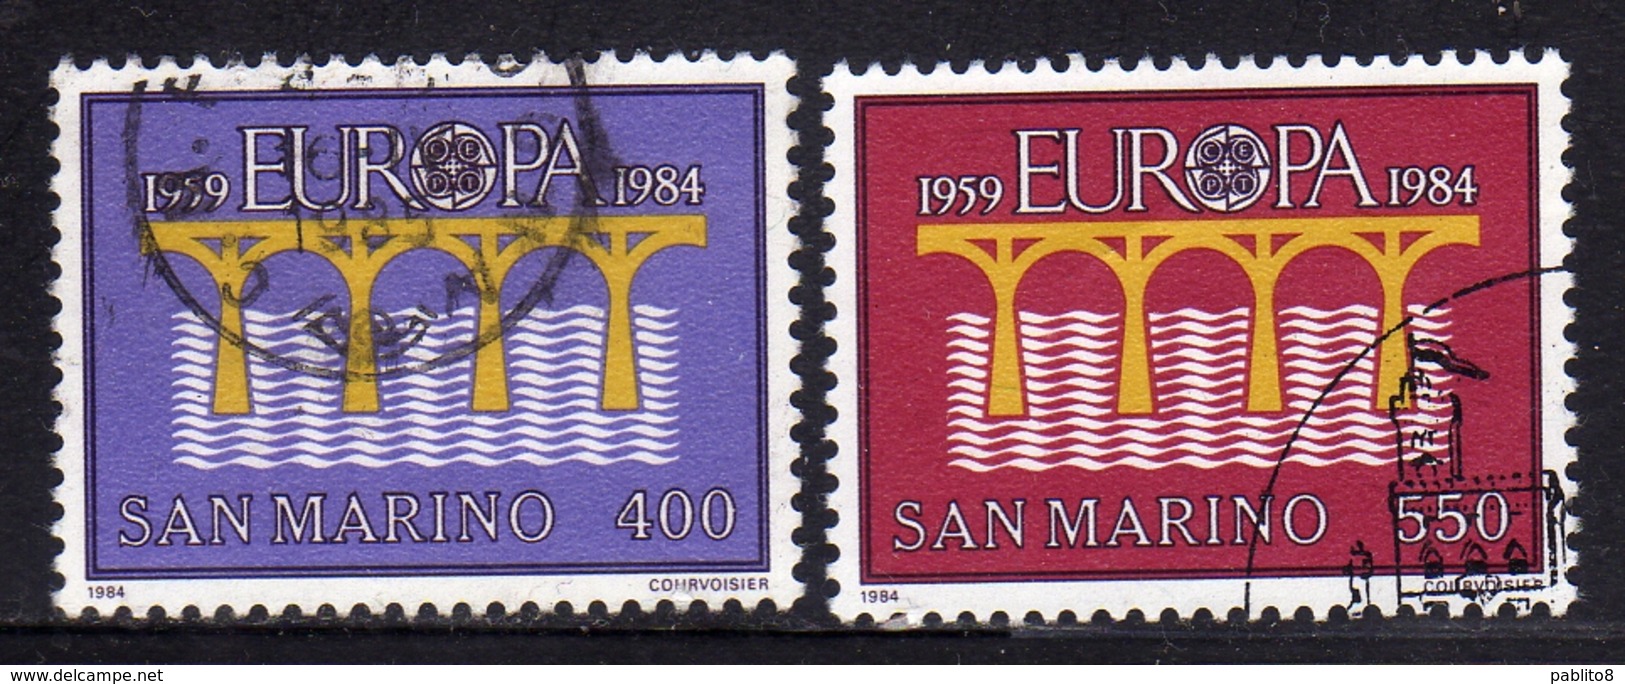 REPUBBLICA DI SAN MARINO 1984 EUROPA UNITA CEPT SERIE COMPLETA COMPLETE SET USATA USED OBLITERE' - Used Stamps